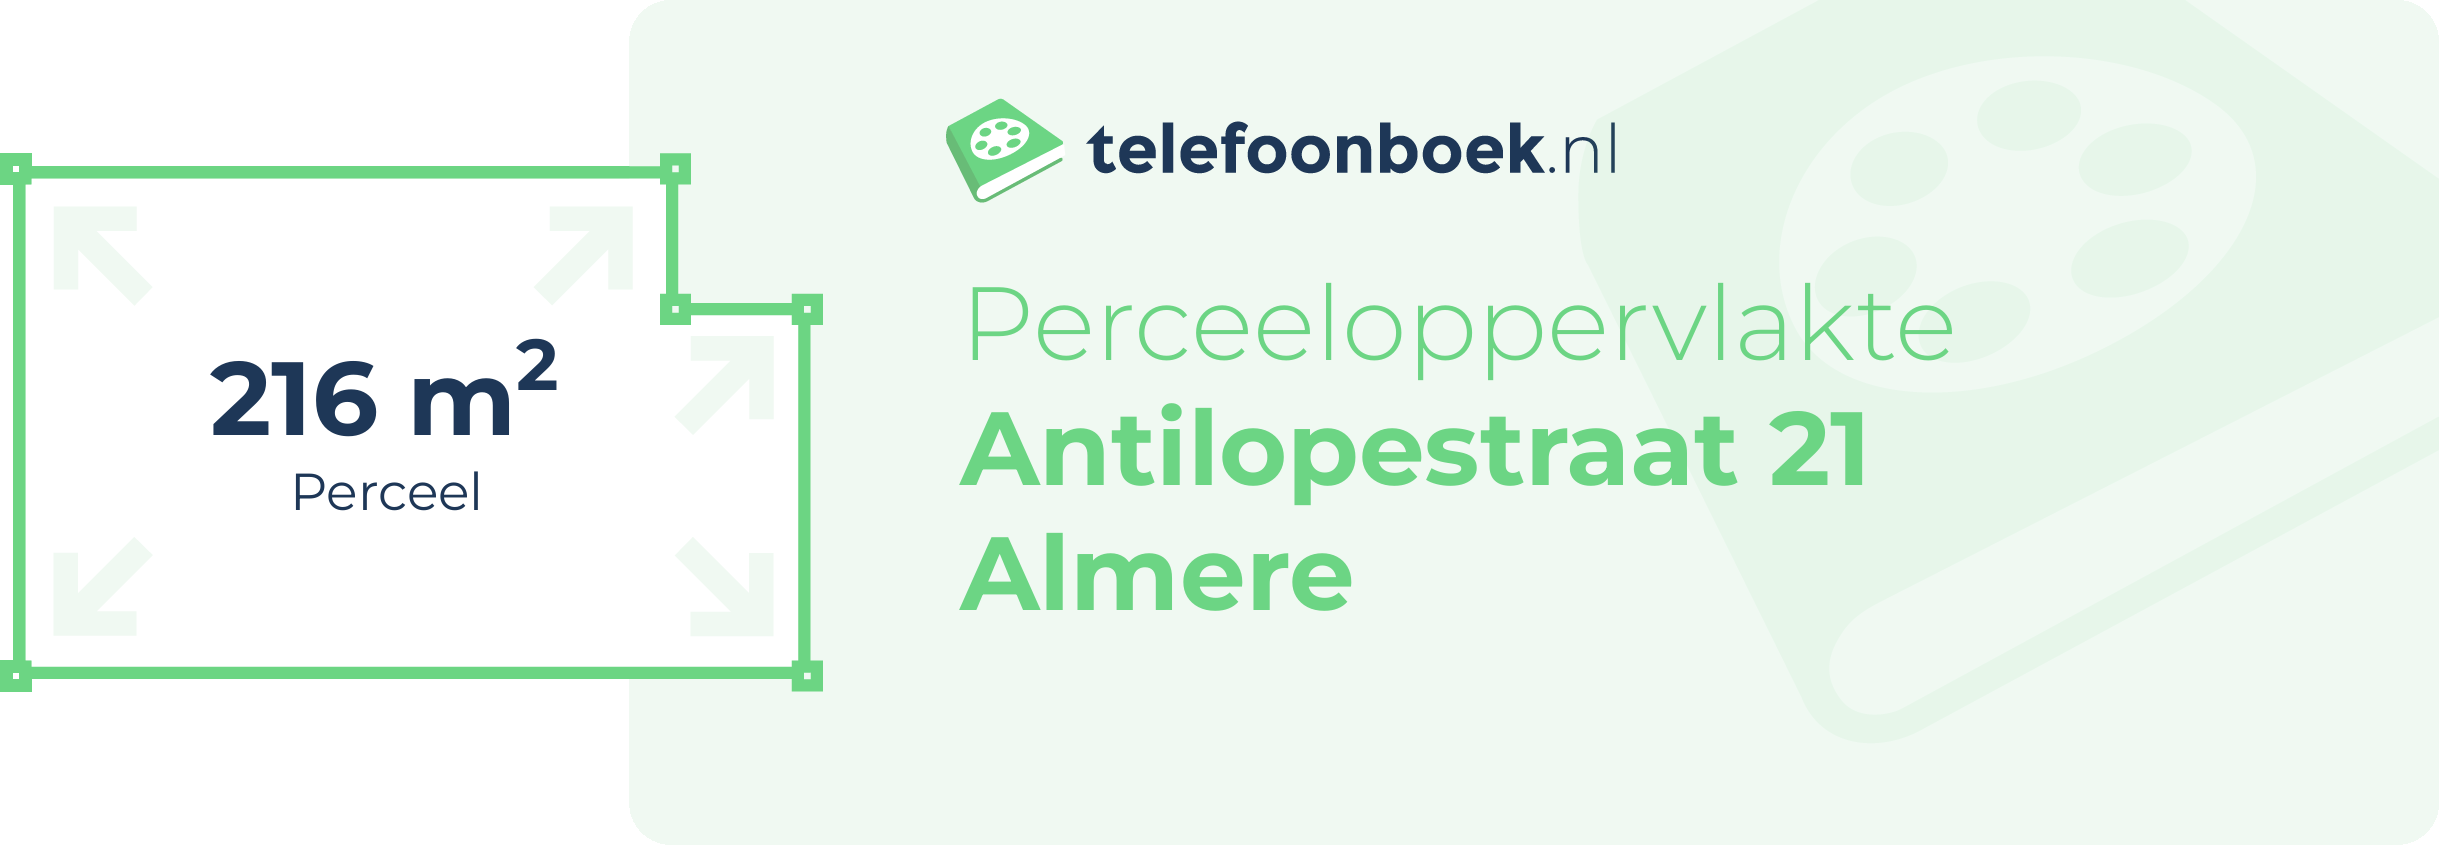 Perceeloppervlakte Antilopestraat 21 Almere